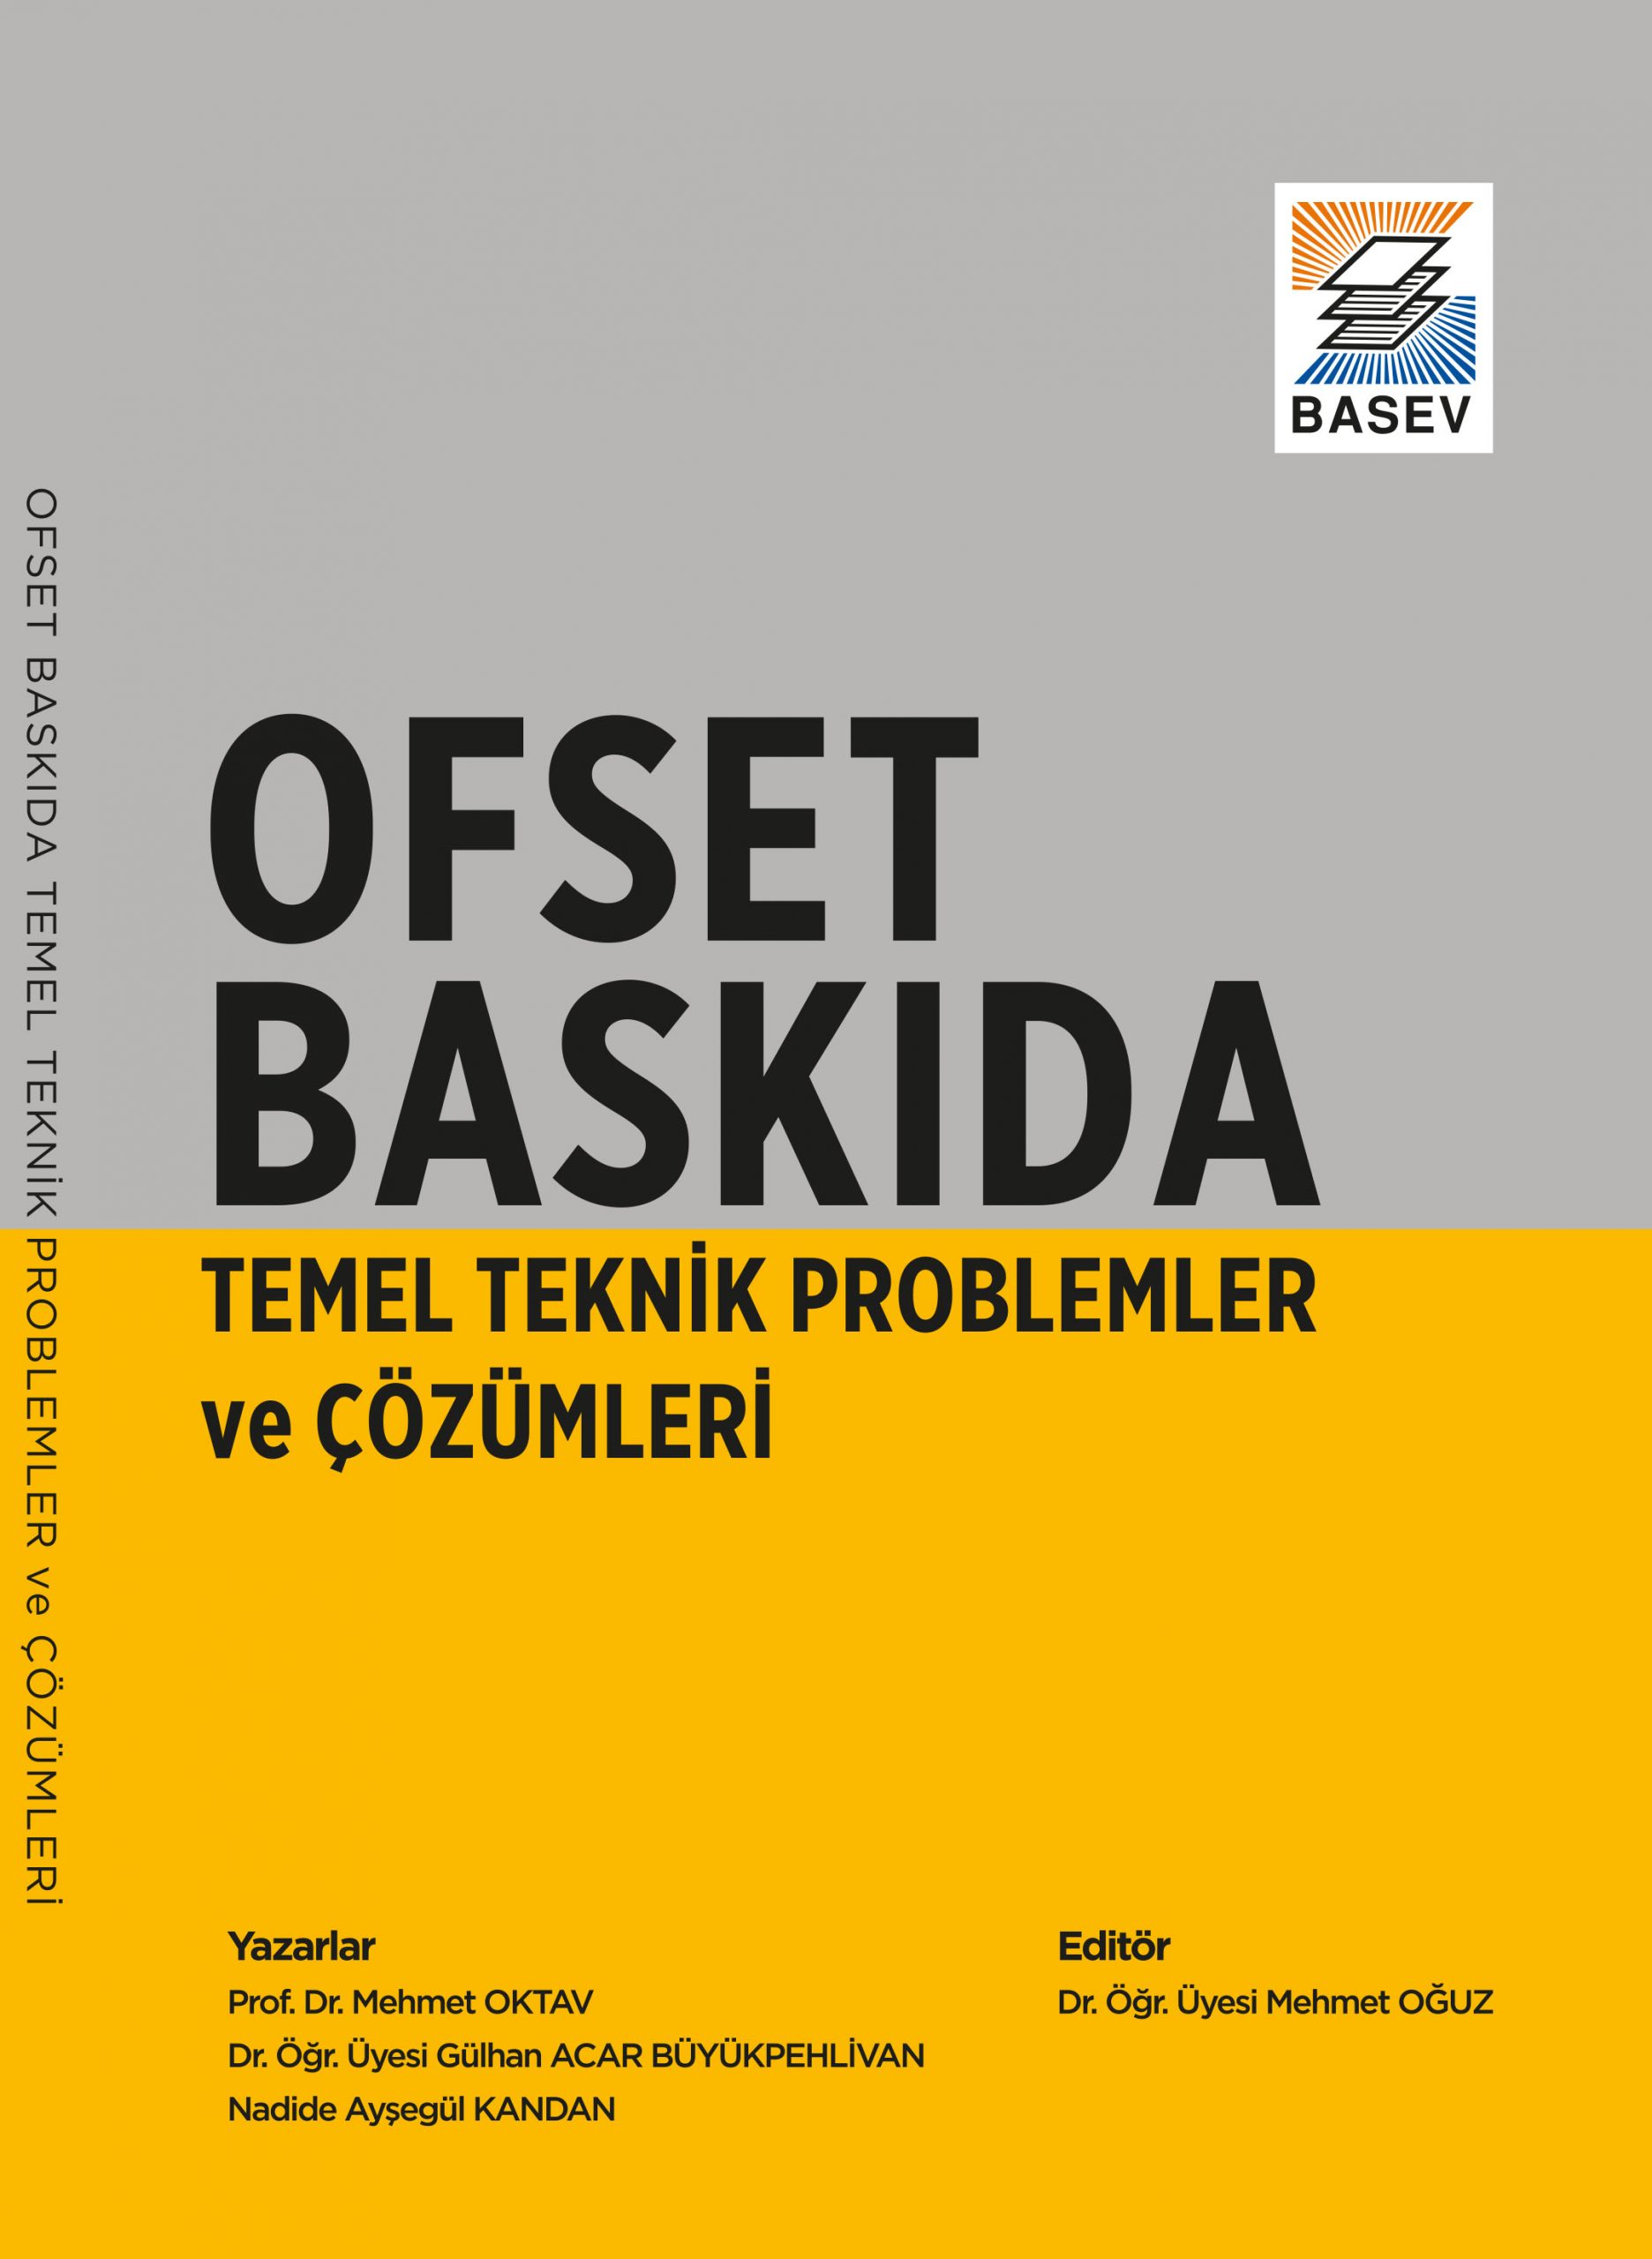 Ofset-Baski-Problemleri.jpeg (223 KB)